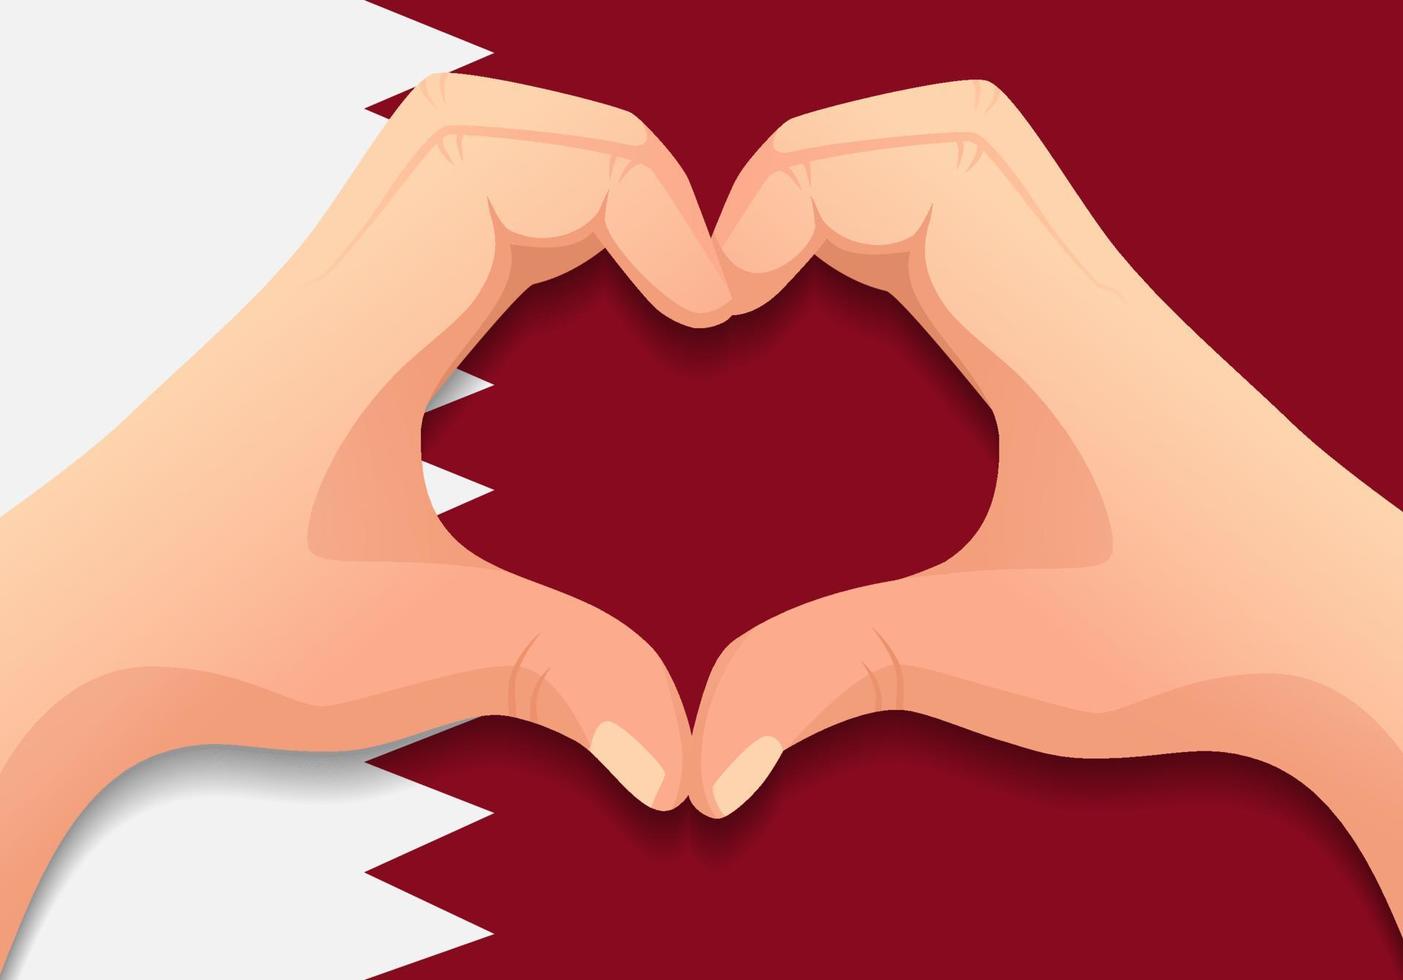 Qatar flag and hand heart shape vector